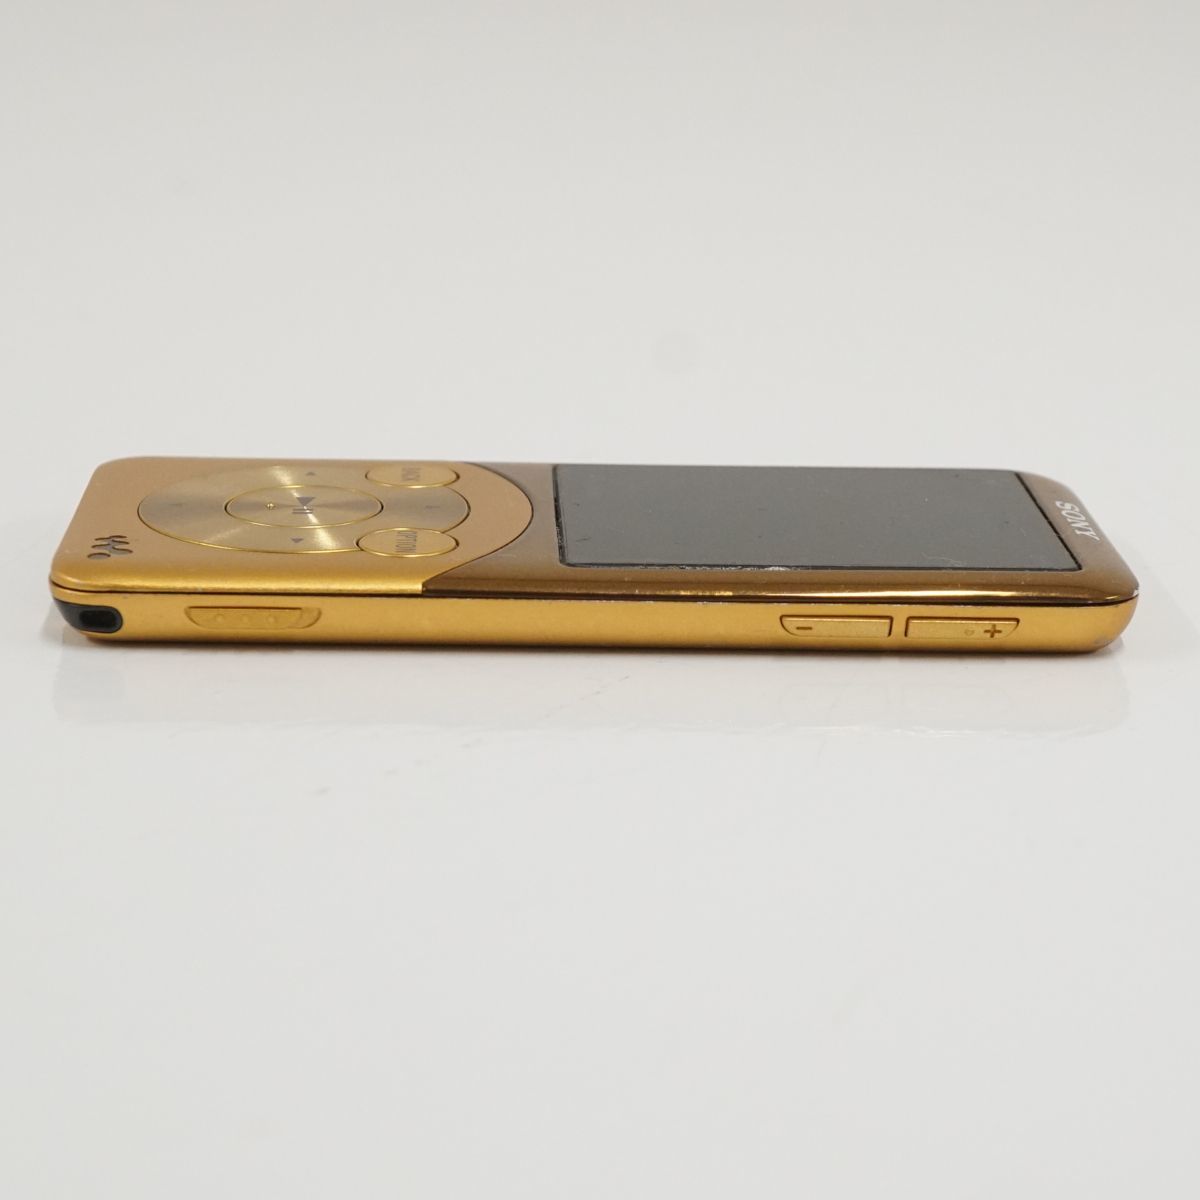 SONY ソニー WLKAMAN ウォークマン NW-S755 16GB USED品 ゴールド ポータブルオーディオプレーヤー 【難有】 T V9117_画像8